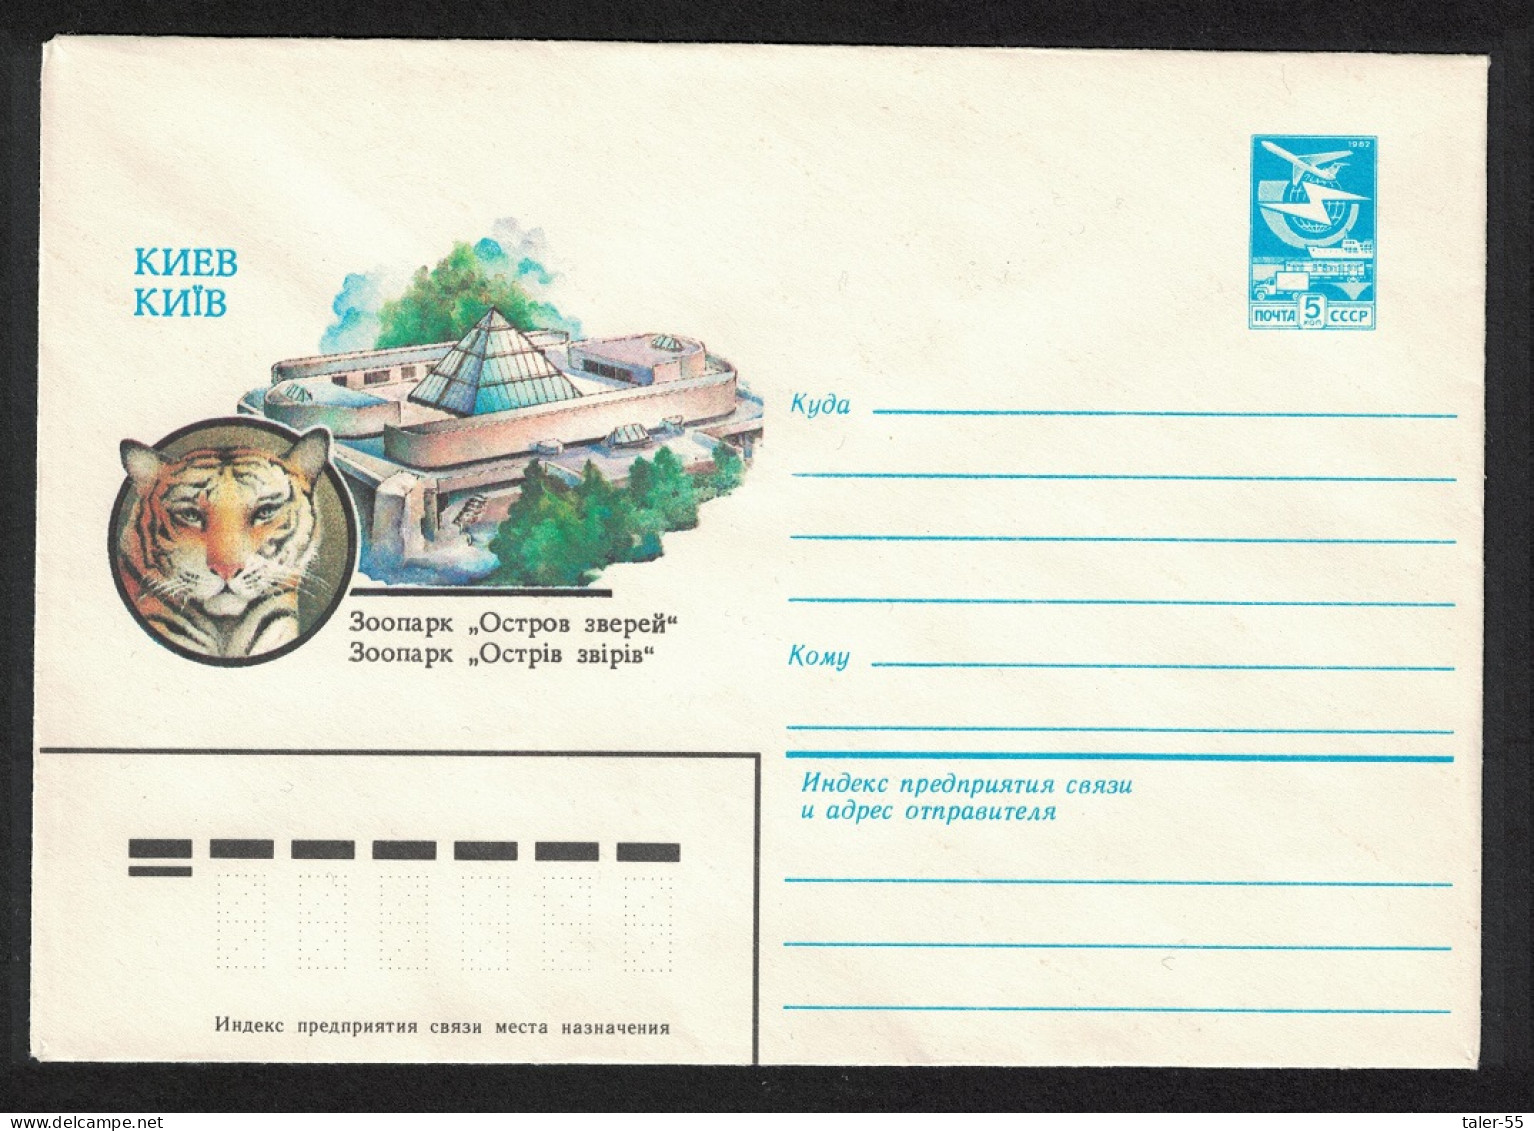 USSR Tiger Kiev Zoo Pre-paid Envelope 1983 - Oblitérés